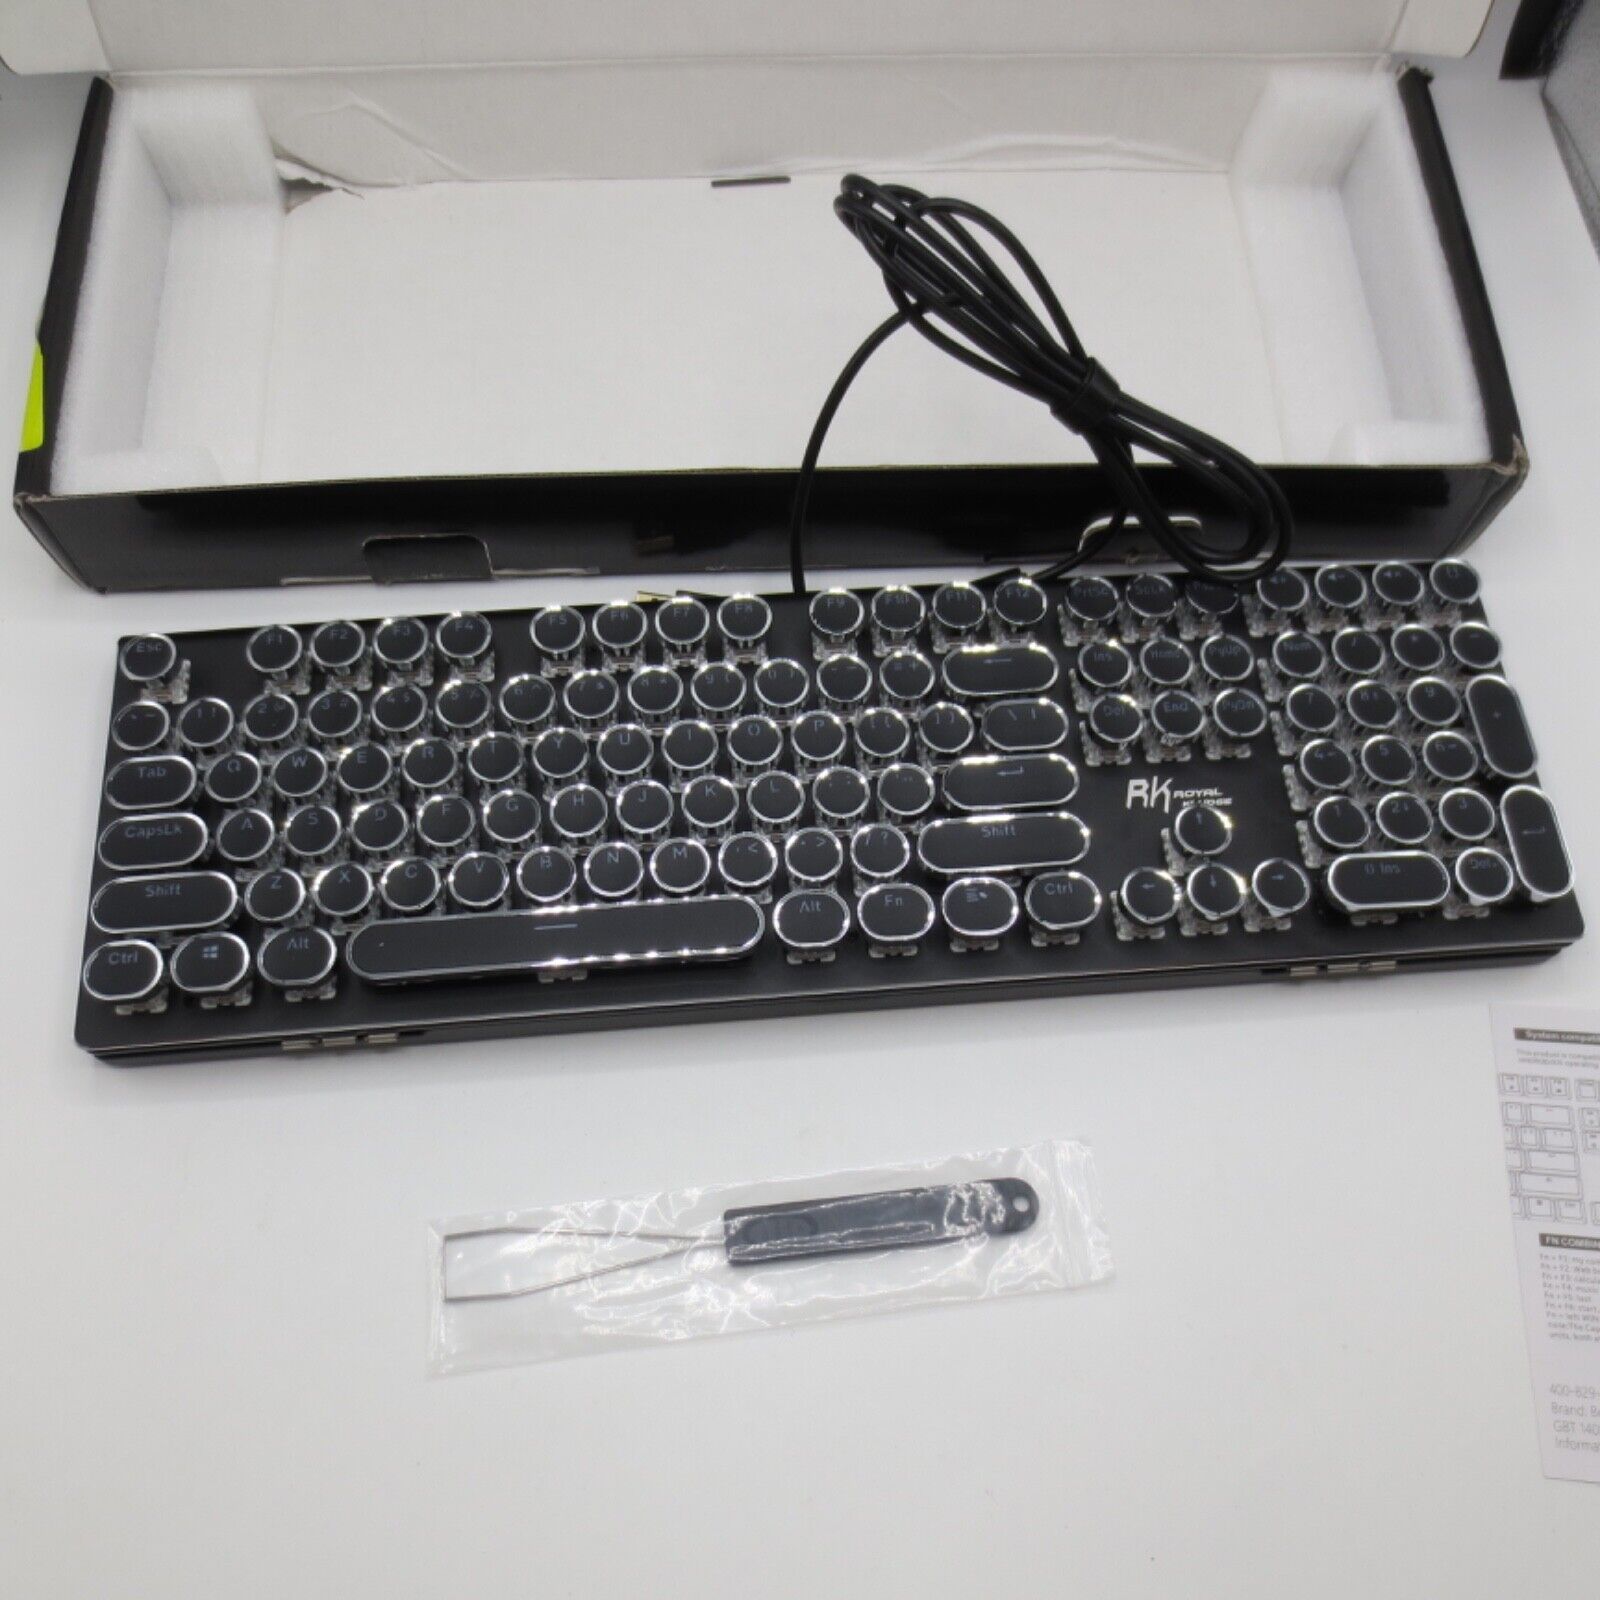 RK ROYAL KLUDGE S108 Typewriter Keyboard Retro Mechanical Black